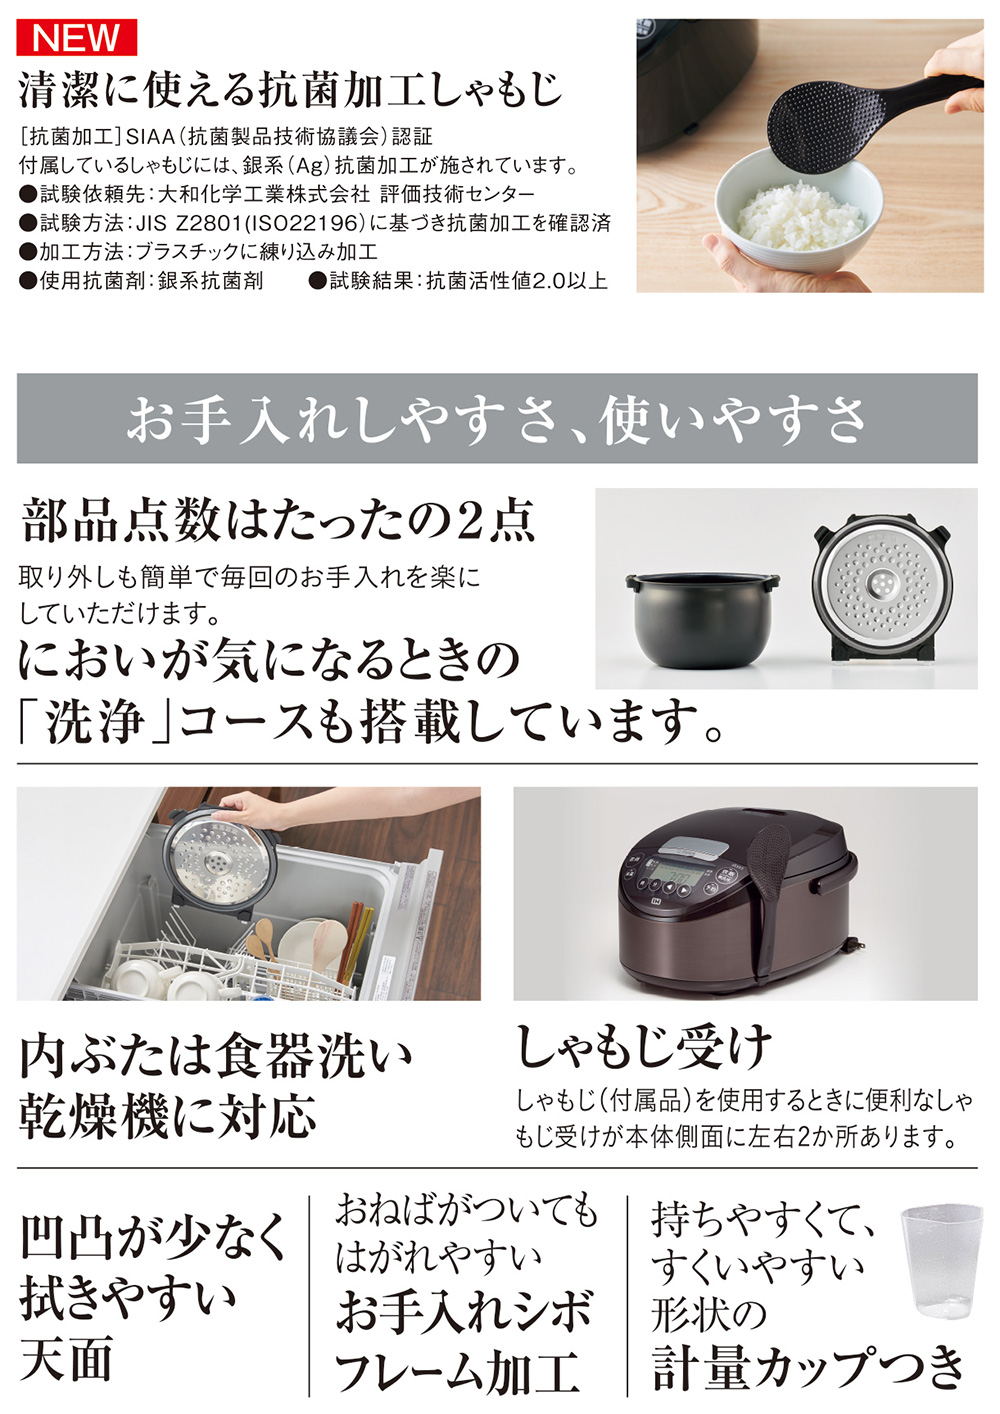 【97%OFF!】 タイガーIH炊飯器 炊きたて JPW-D100 5.5合炊き sushitai.com.mx